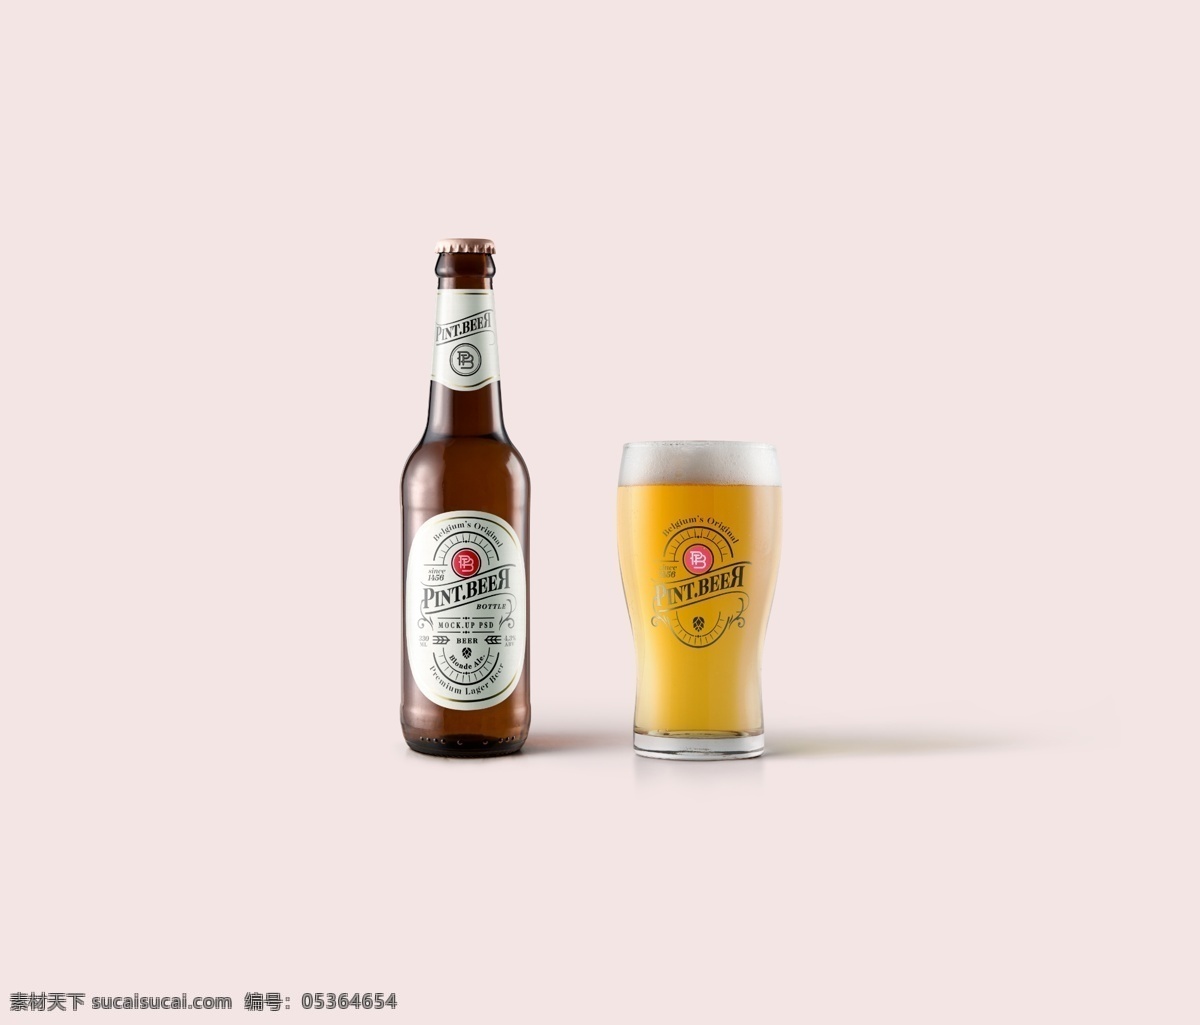 啤酒瓶 瓶子 啤酒 瓶型 效果图 样机 玻璃杯 啤酒杯 商标设计 瓶标设计 包装设计